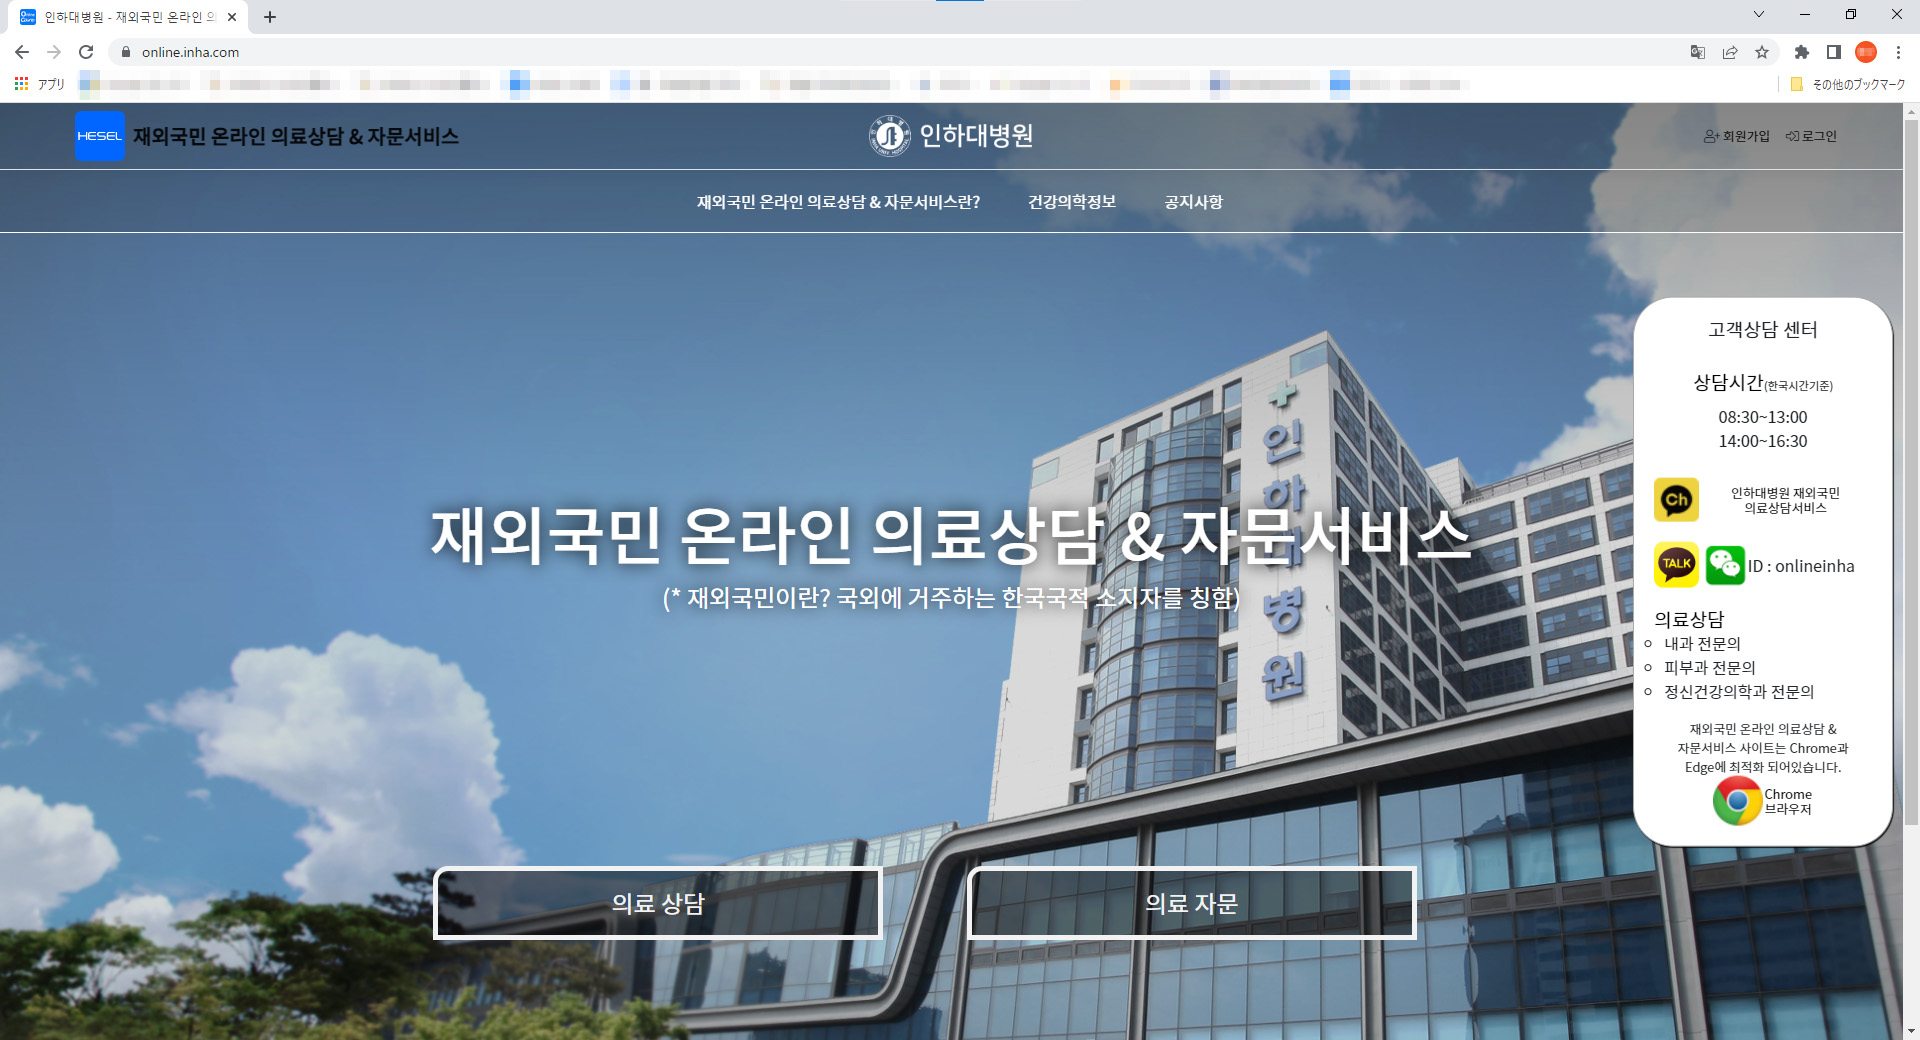 韓国国内大学病院「仁荷（inha）大学病院」現在運営中のwebサイトキャプチャ